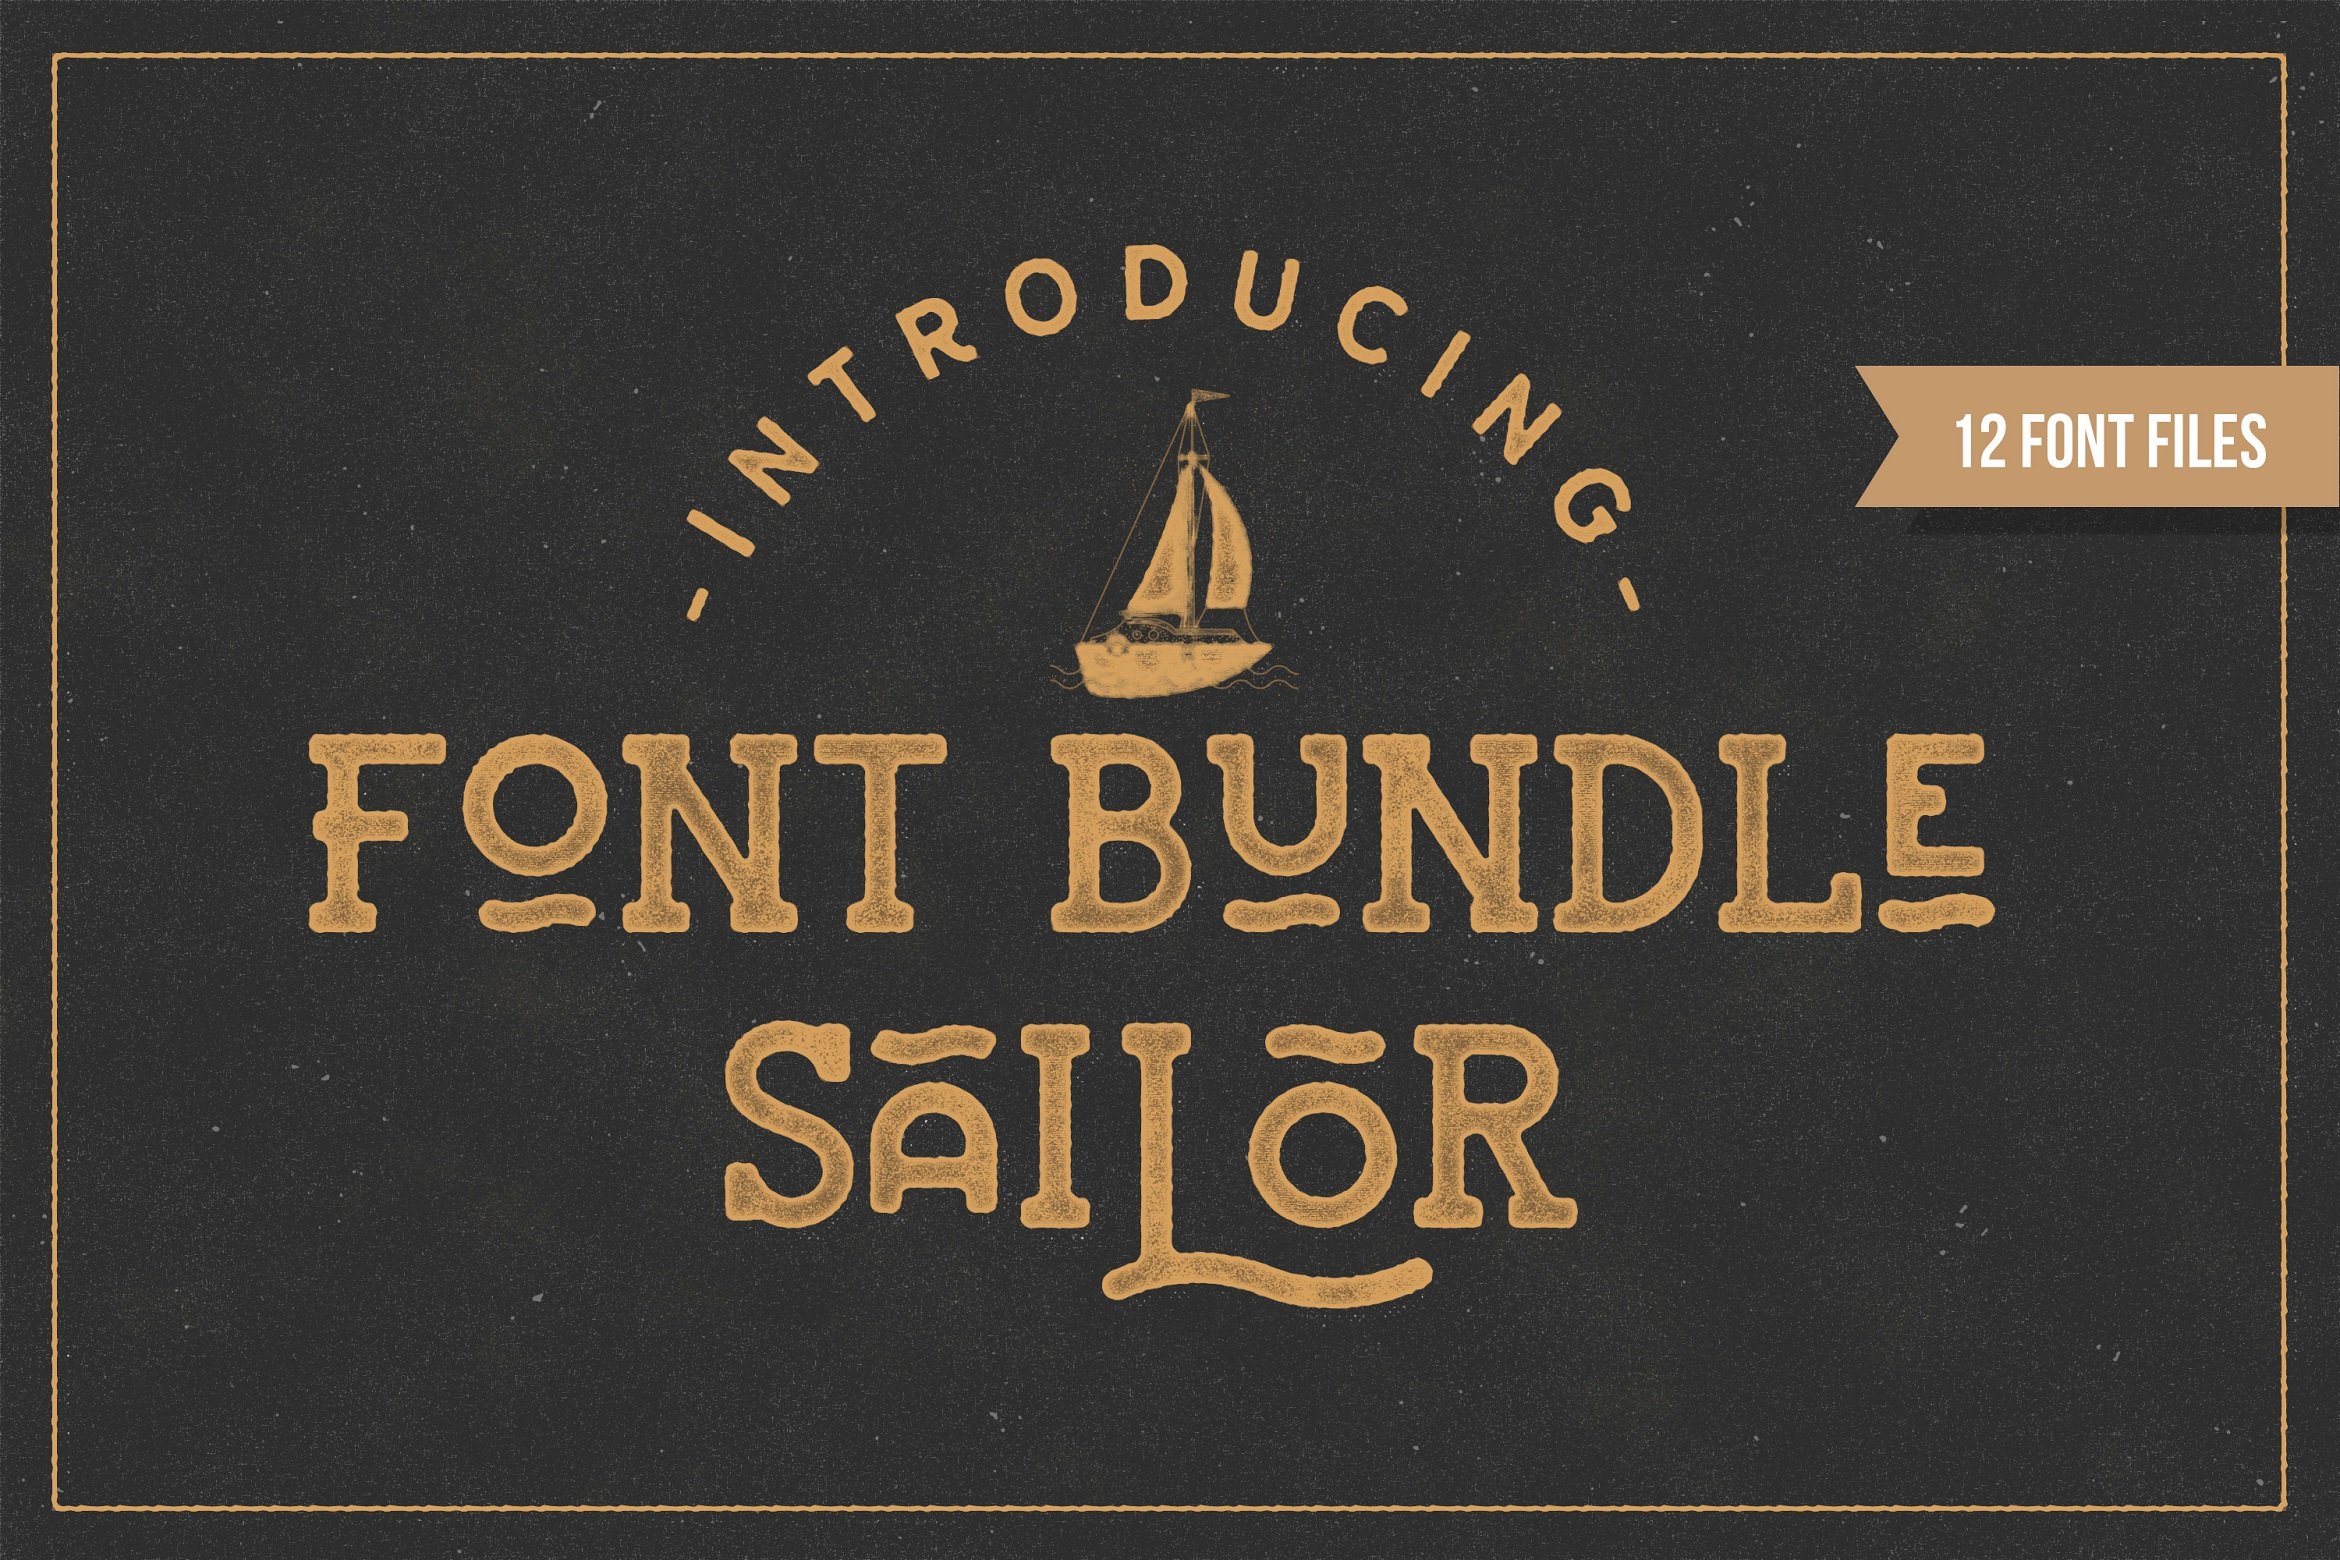 Sailor Font Bundle cover image.